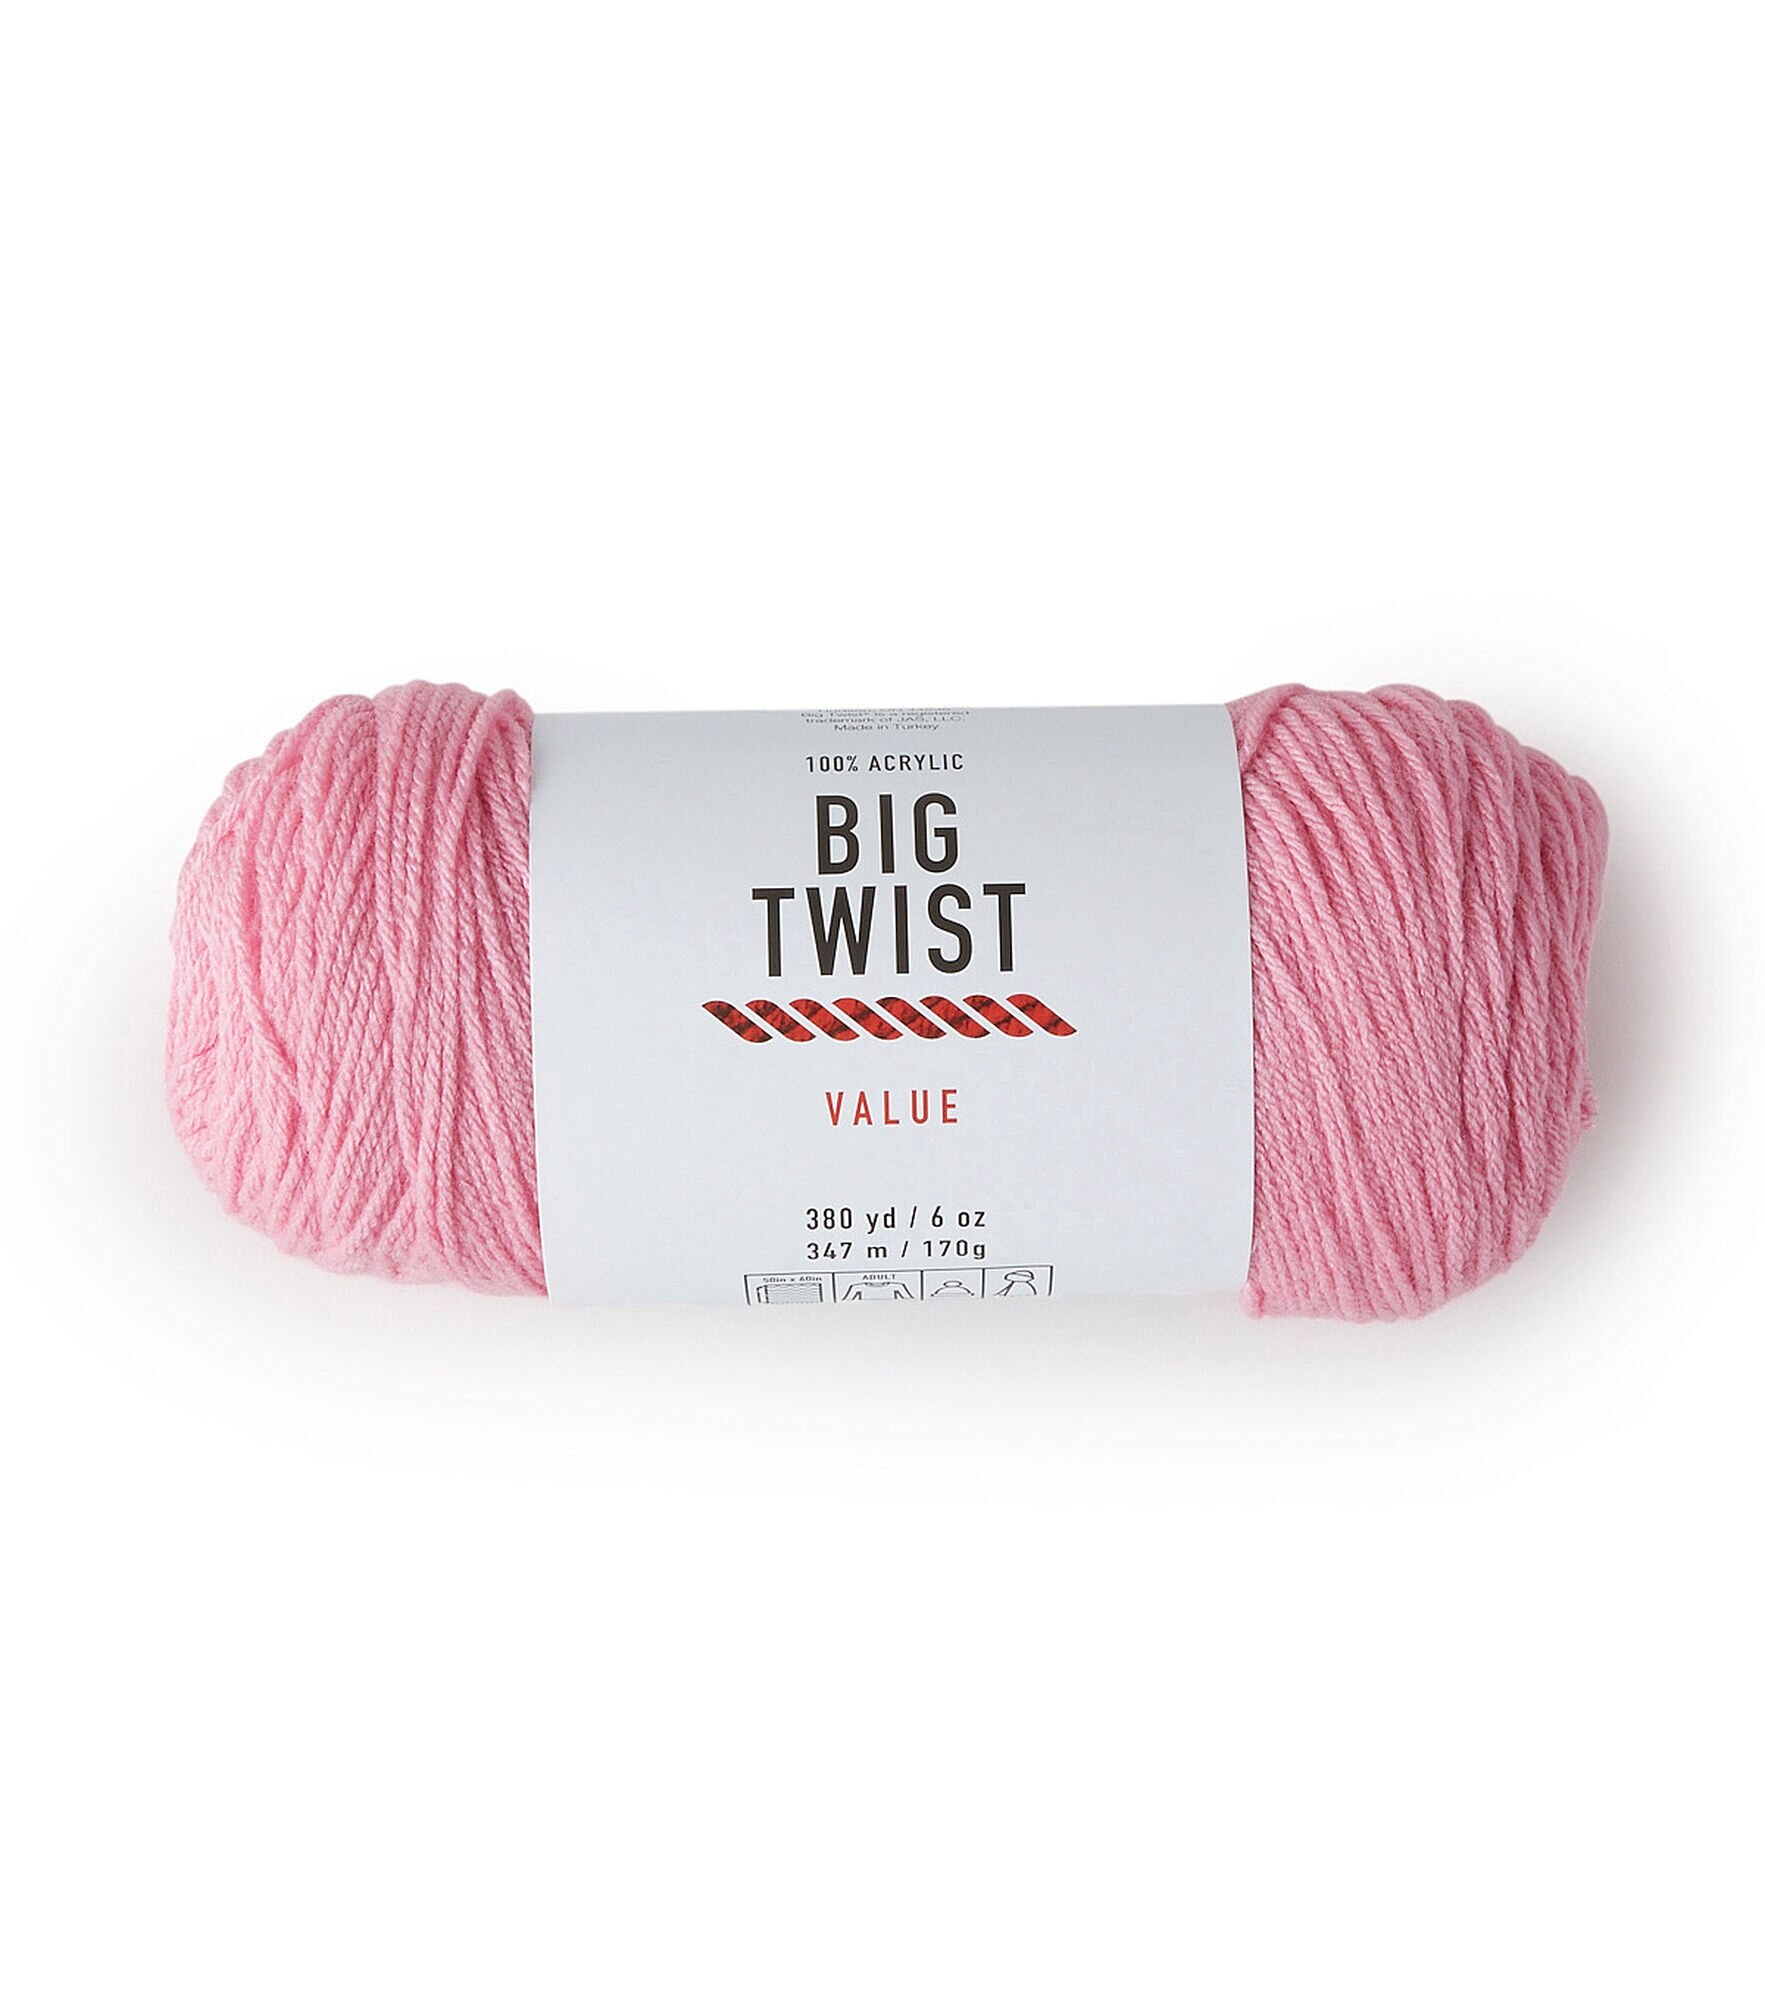 Big Twist Value Yarn Camel Dye Lot #644266 100% Acrylic Weight #4 6oz  /380yds